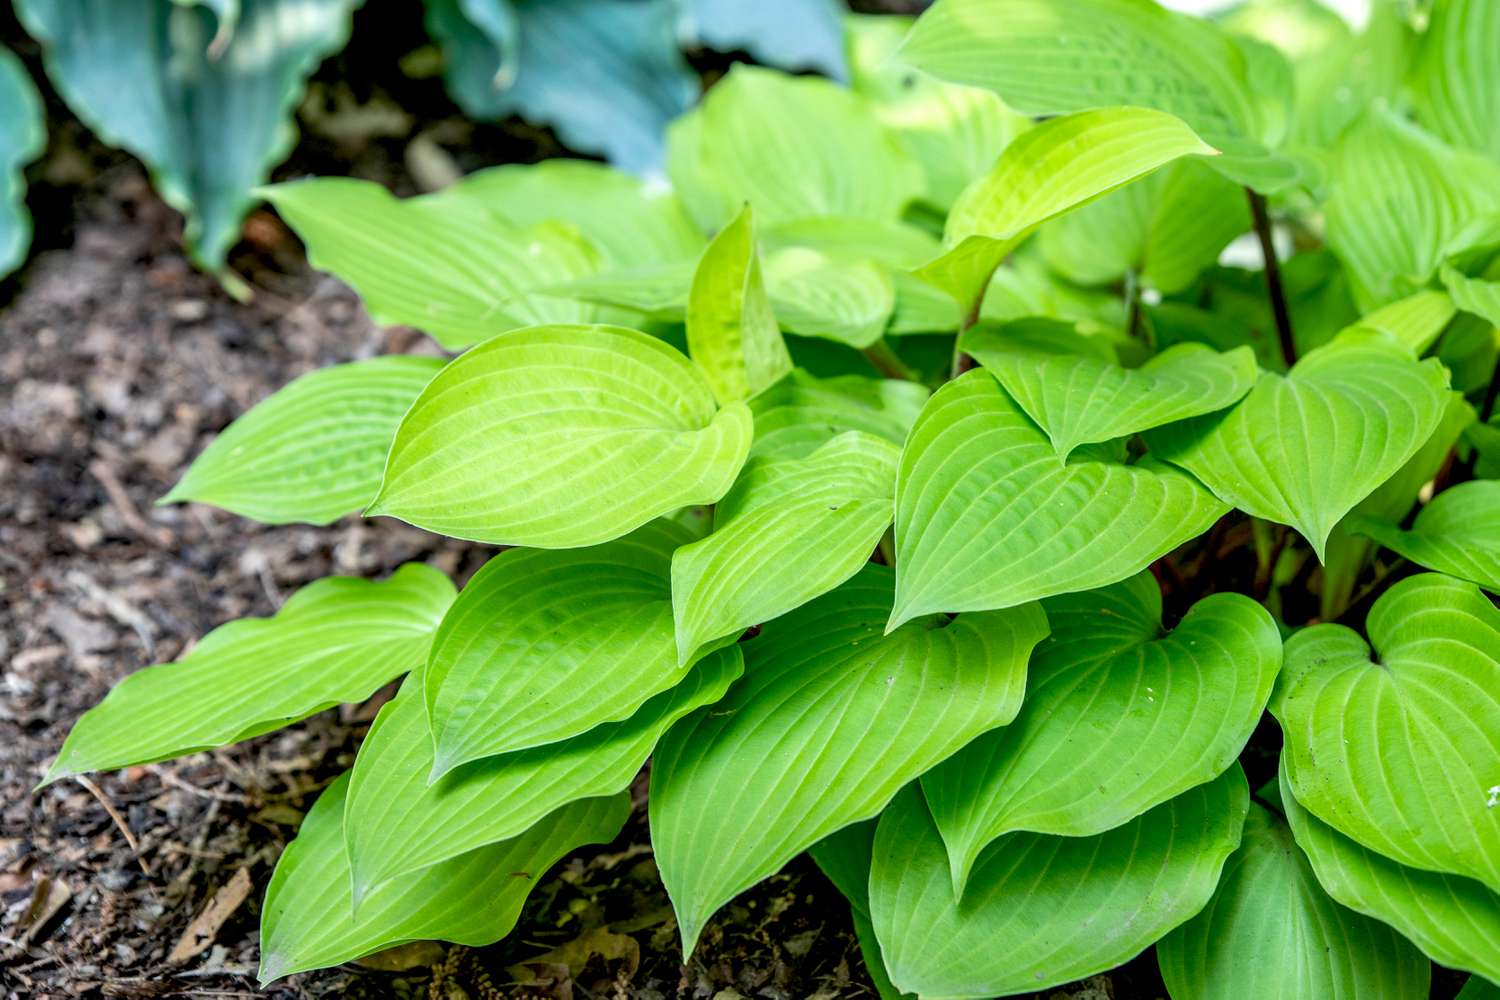 Feuerinsel-Hosta-Pflanze mit gerippten hellgrünen Blättern in Bodennähe gepflanzt